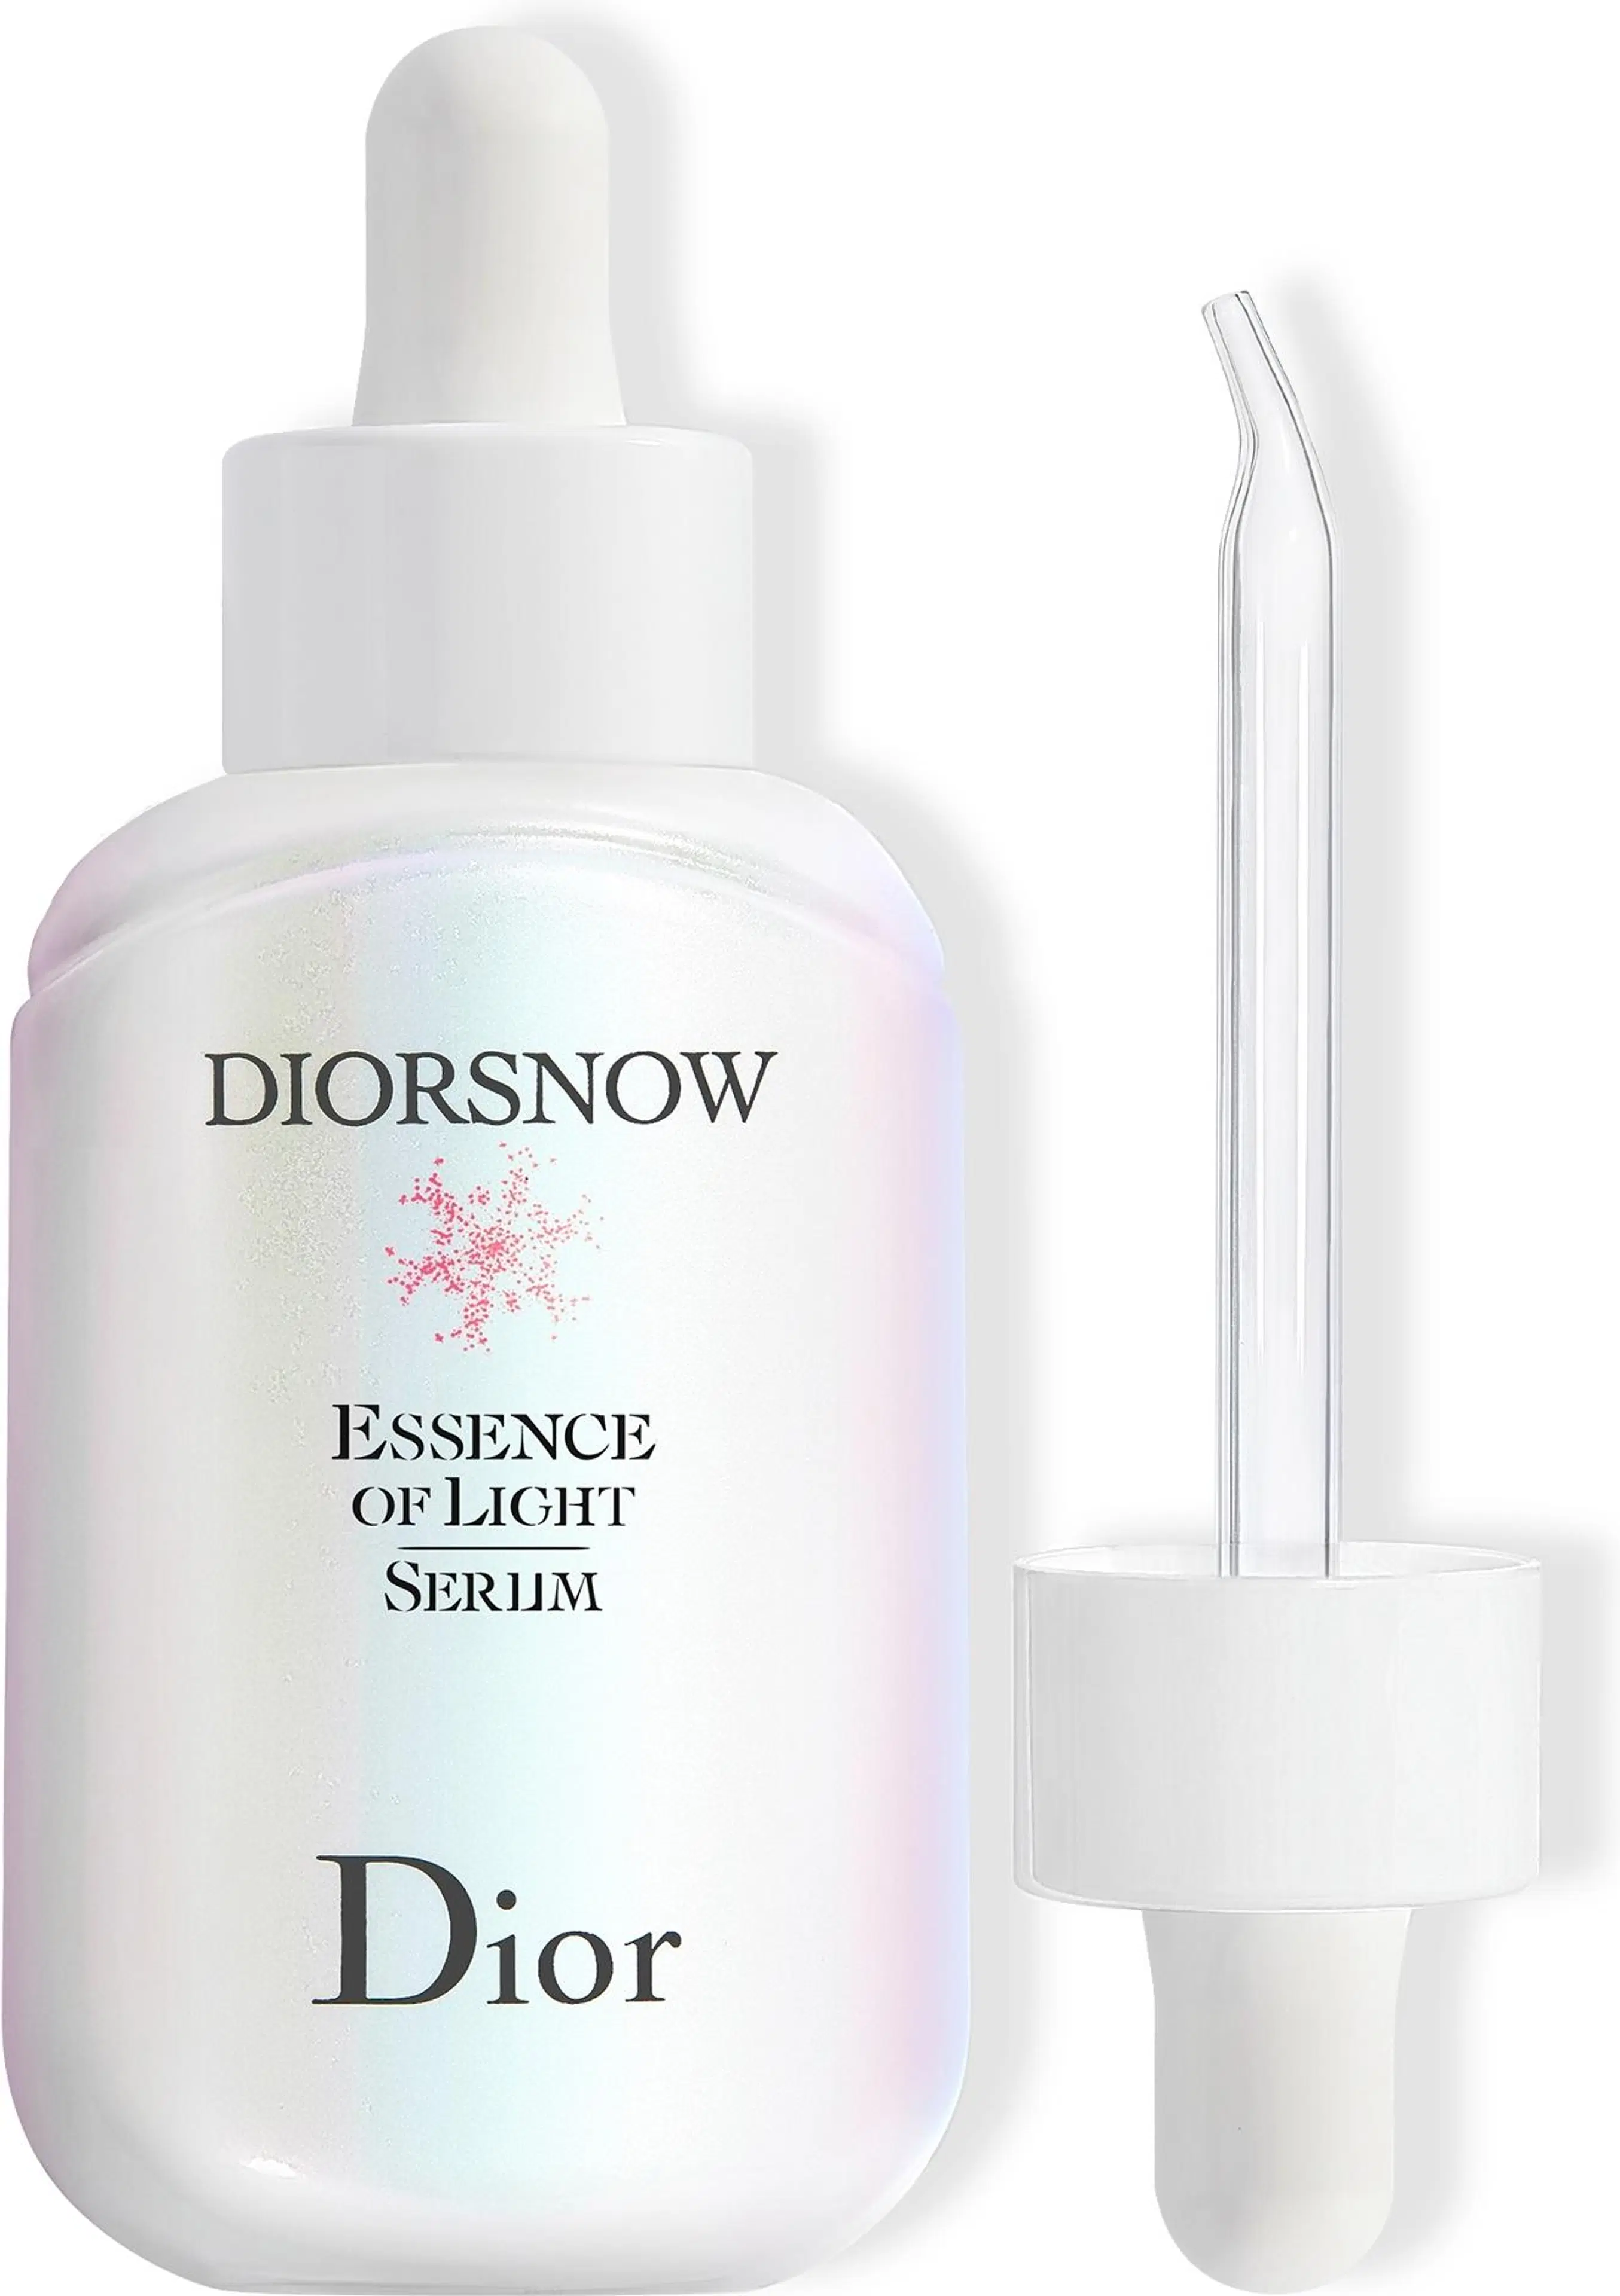 DIOR Snow essence of light serum kasvoseerumi 50 ml